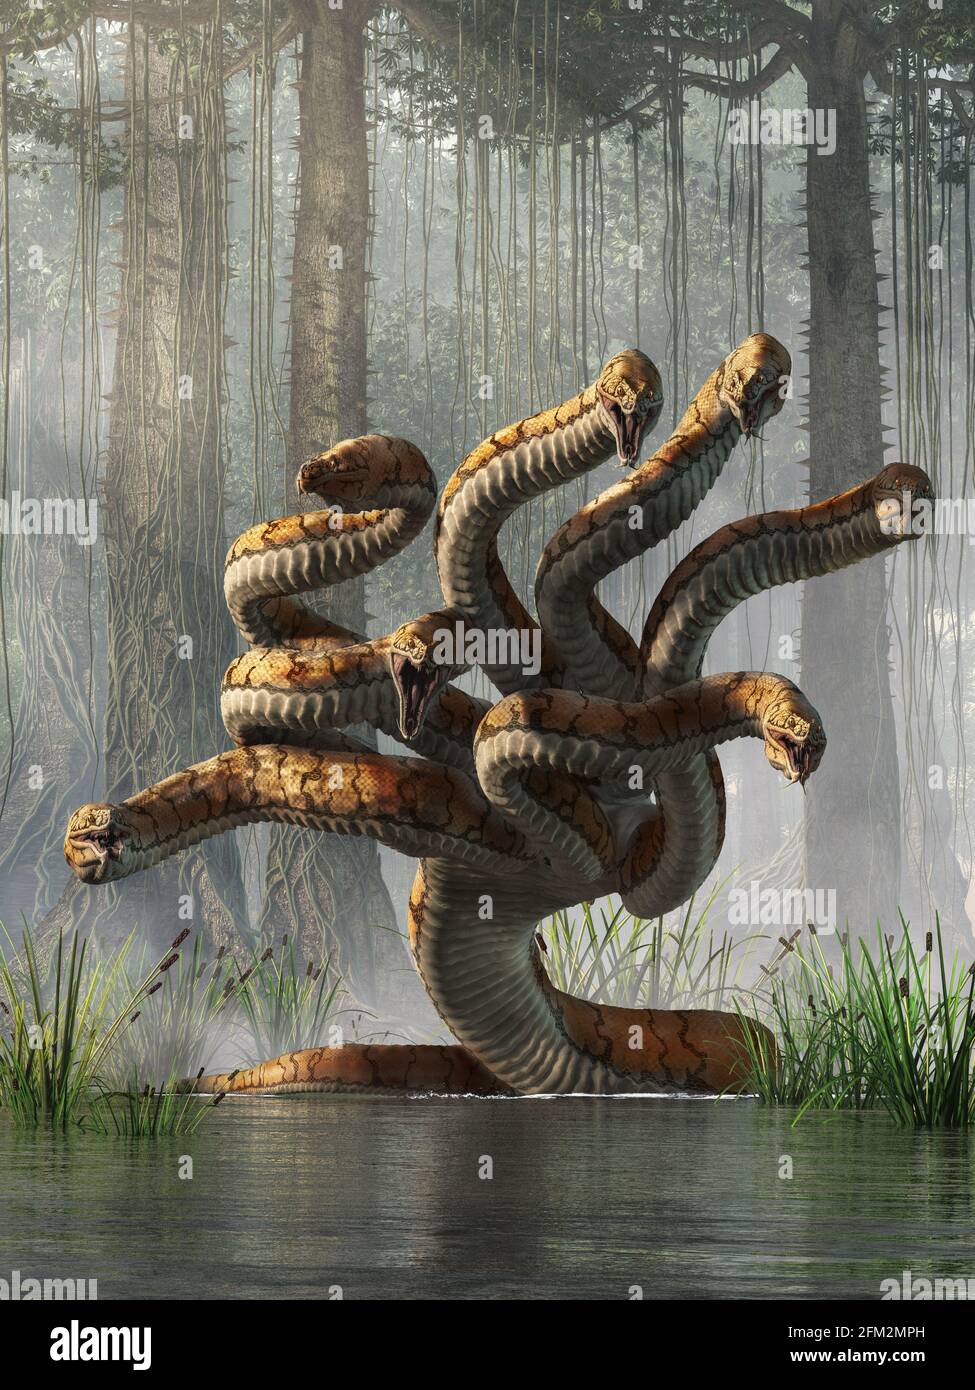 L'hydre est un monstre à plusieurs têtes de serpent de la mythologie grecque et romaine antique qui a été tué par Hercules. Rendu 3D Banque D'Images